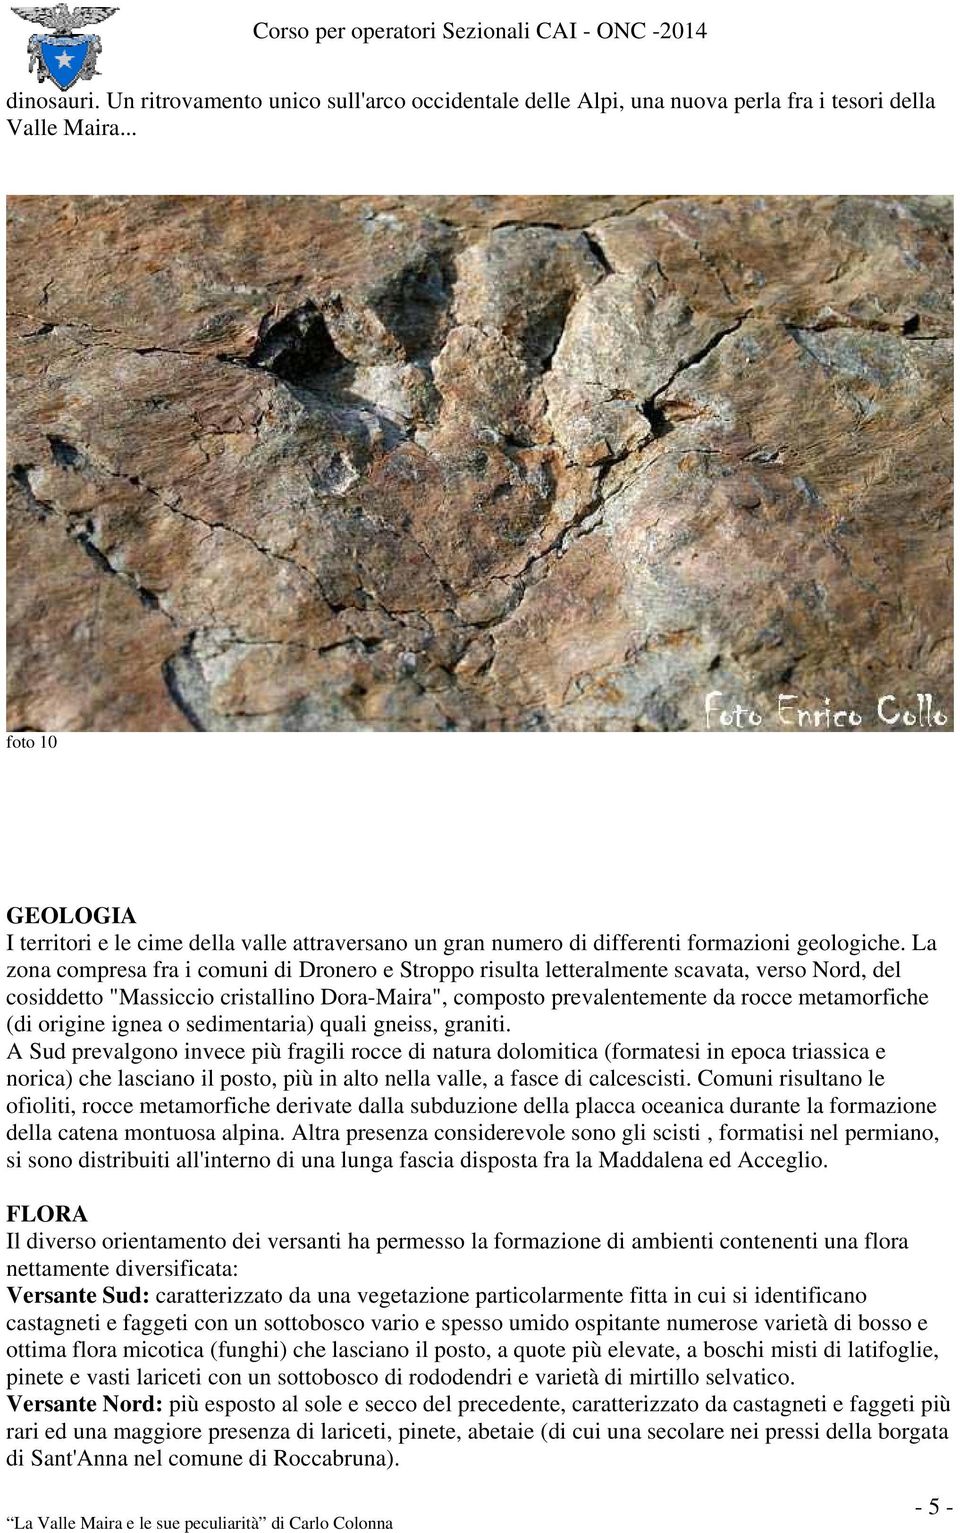 La zona compresa fra i comuni di Dronero e Stroppo risulta letteralmente scavata, verso Nord, del cosiddetto "Massiccio cristallino Dora-Maira", composto prevalentemente da rocce metamorfiche (di